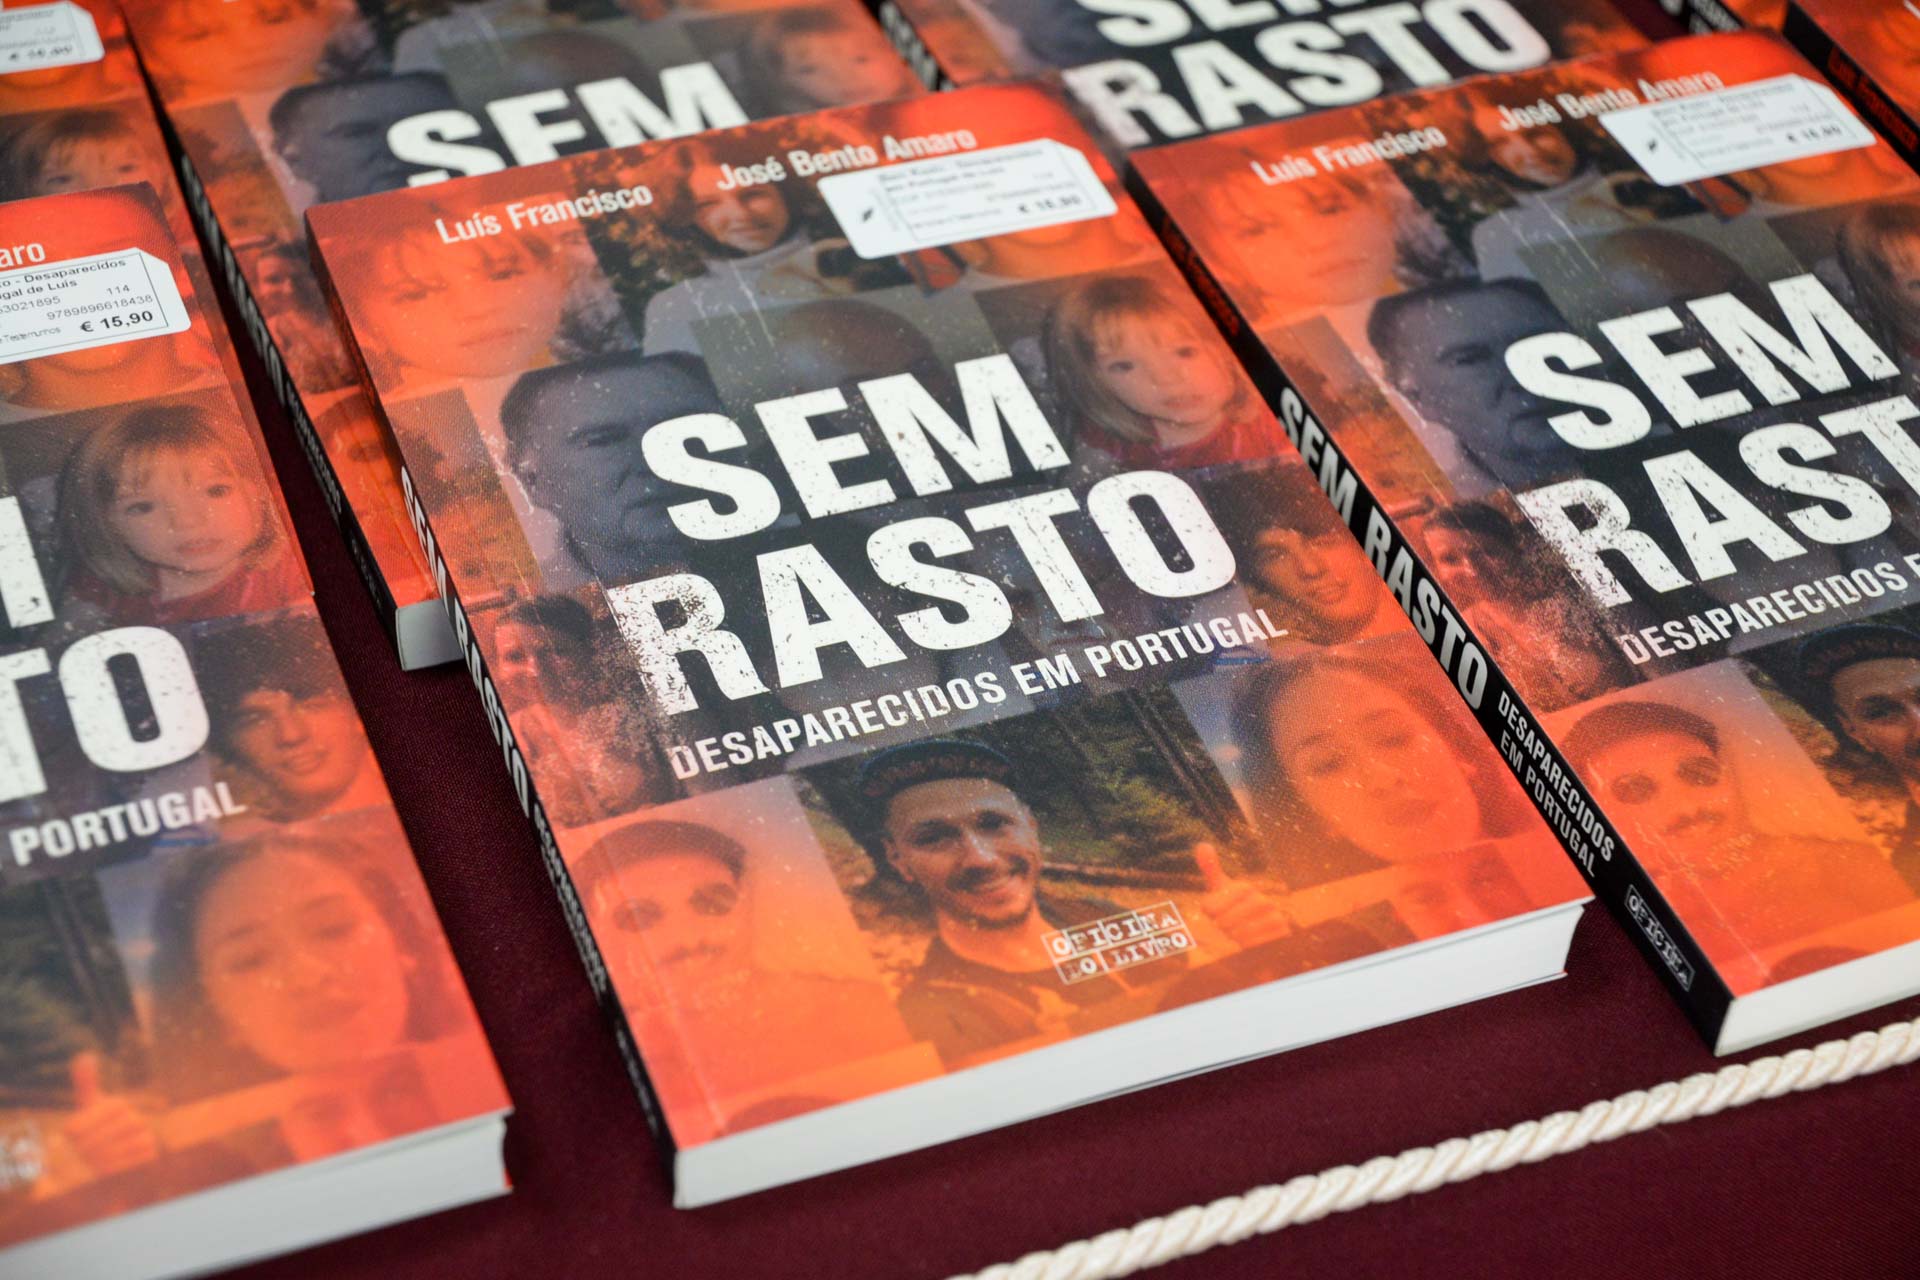 Livro “Sem Rasto – Desaparecidos em Portugal” apresentado no Mercado de Natal